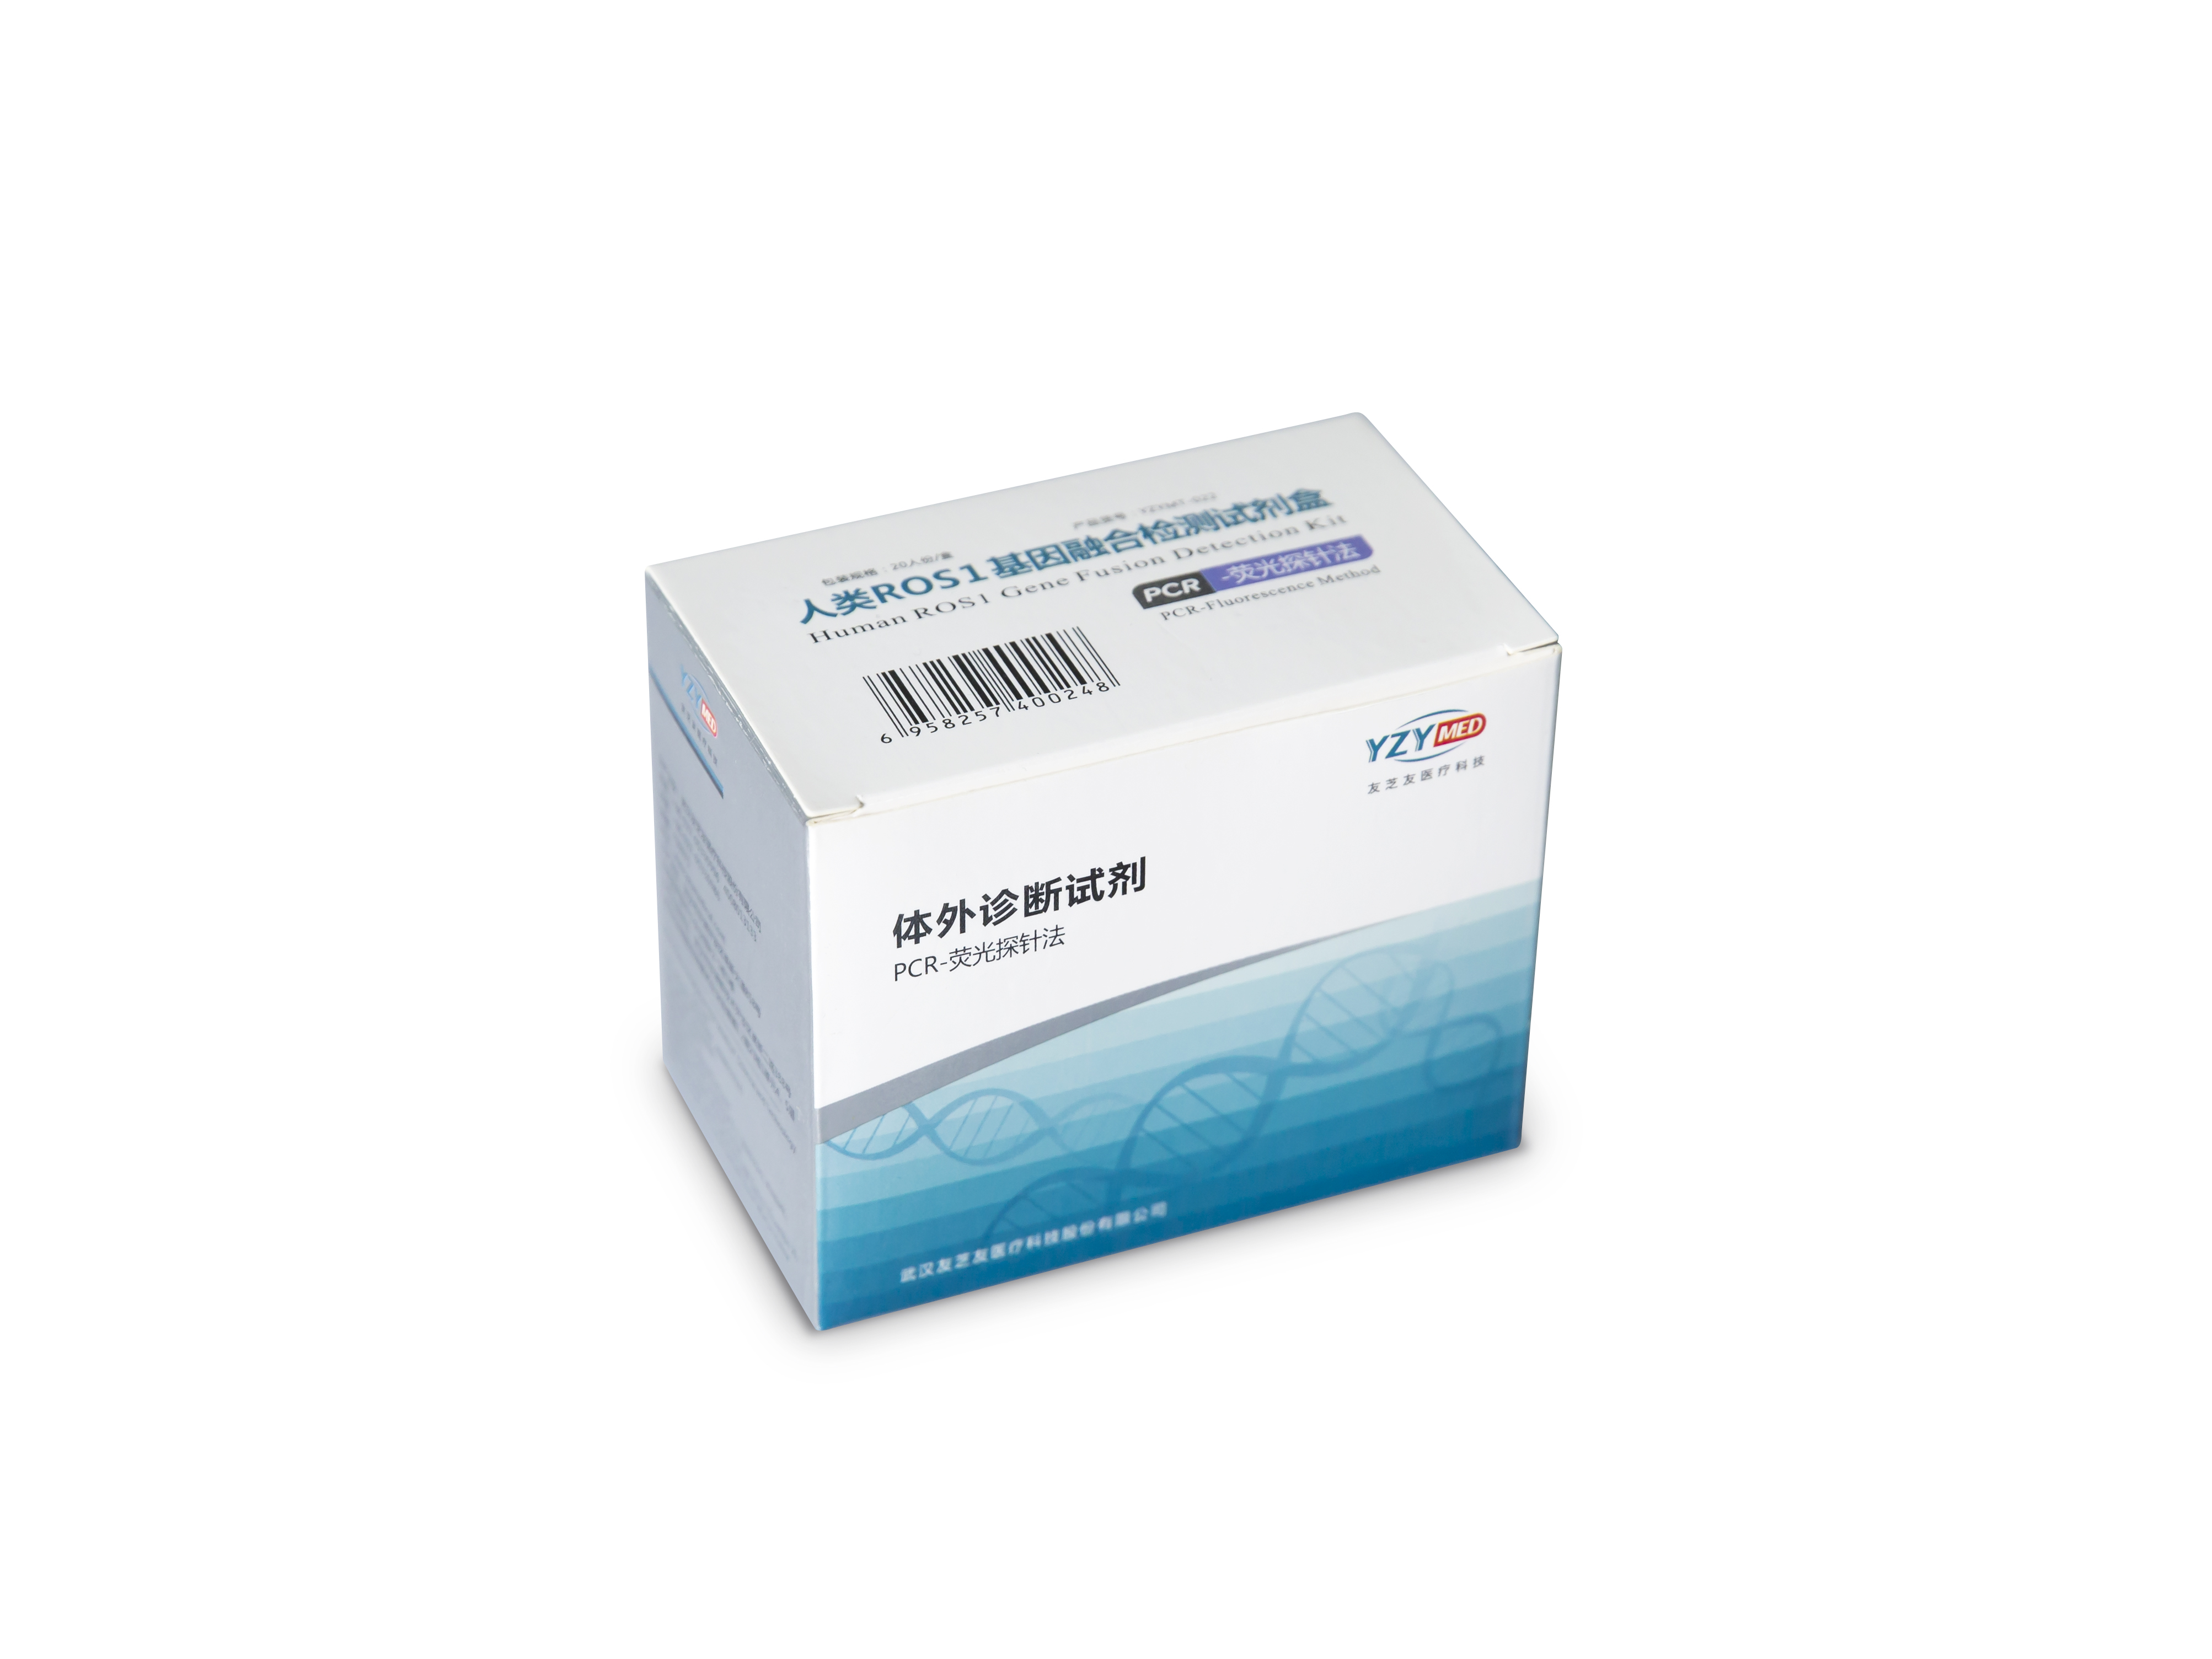 【友芝友】人类ROS1基因融合检测试剂盒(PCR-荧光探针法)-云医购